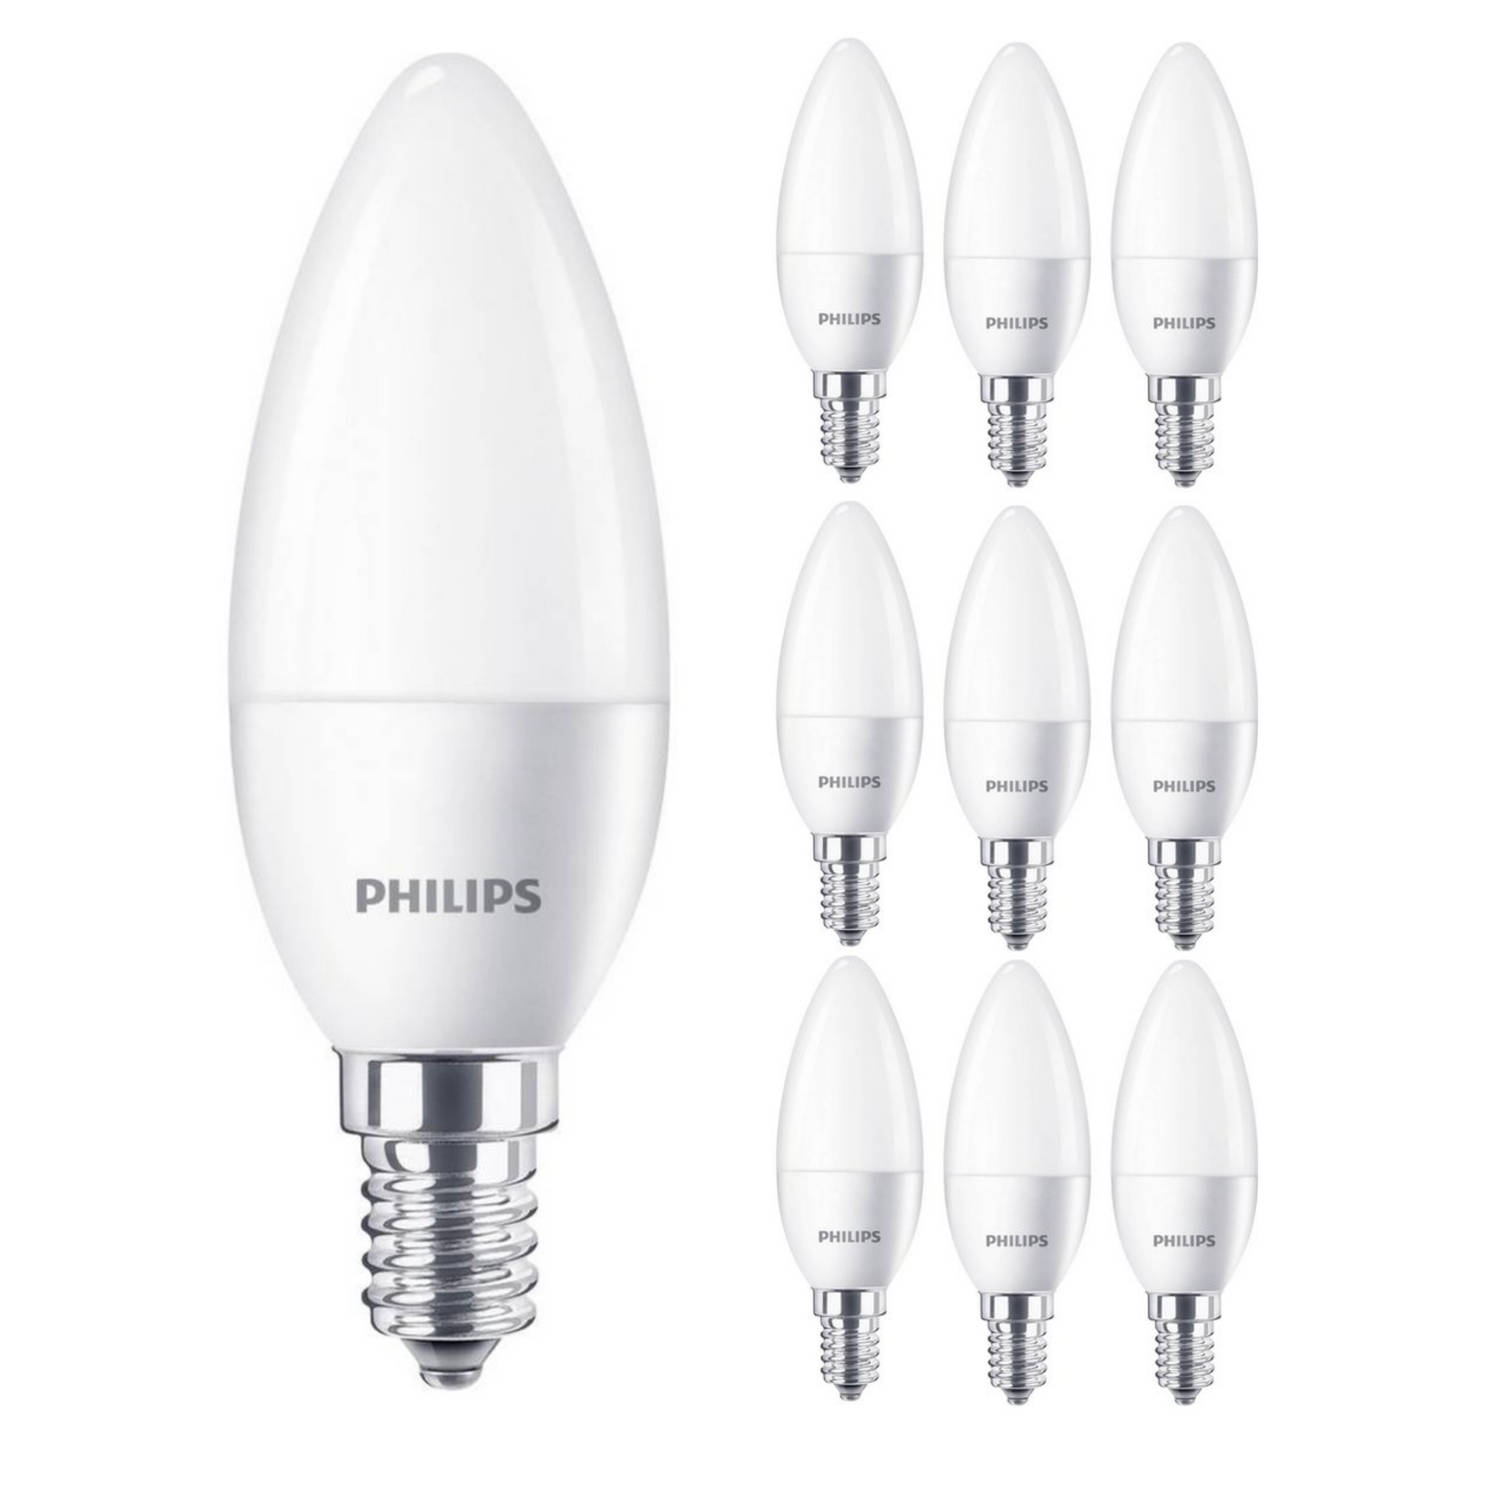 Philips Voordeelverpakking LED Kaarslampen E14 - Koud wit licht 4000K - 520 lm - 5.5W/40W - 10 stuks